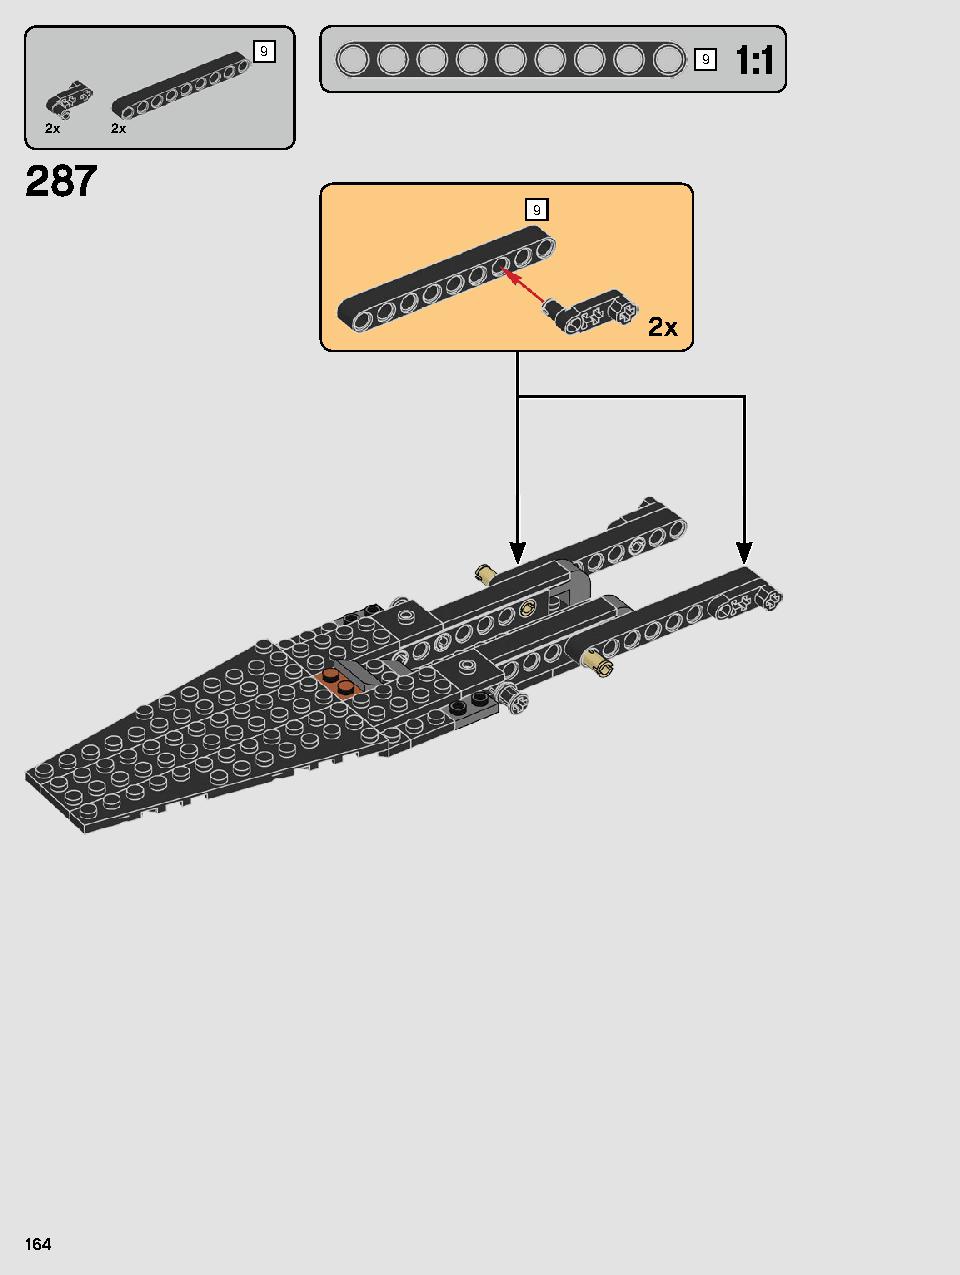 스타워즈 카일로 렌의 셔틀™ 75256 레고 세트 제품정보 레고 조립설명서 164 page